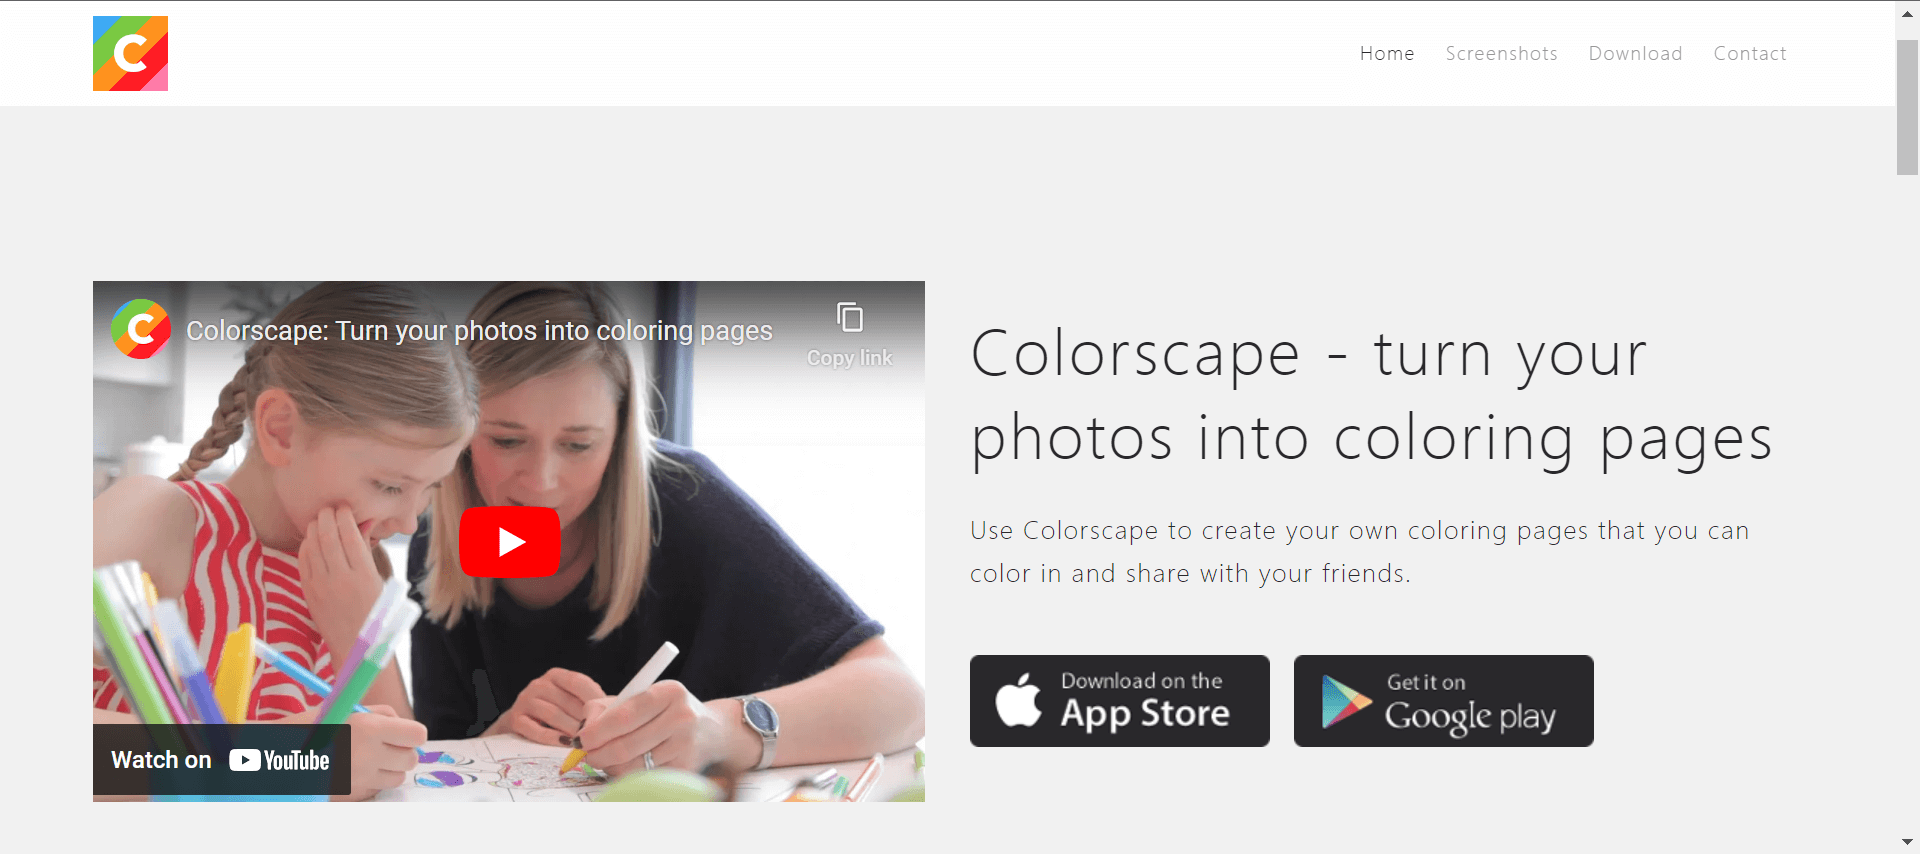 Colorscape's website